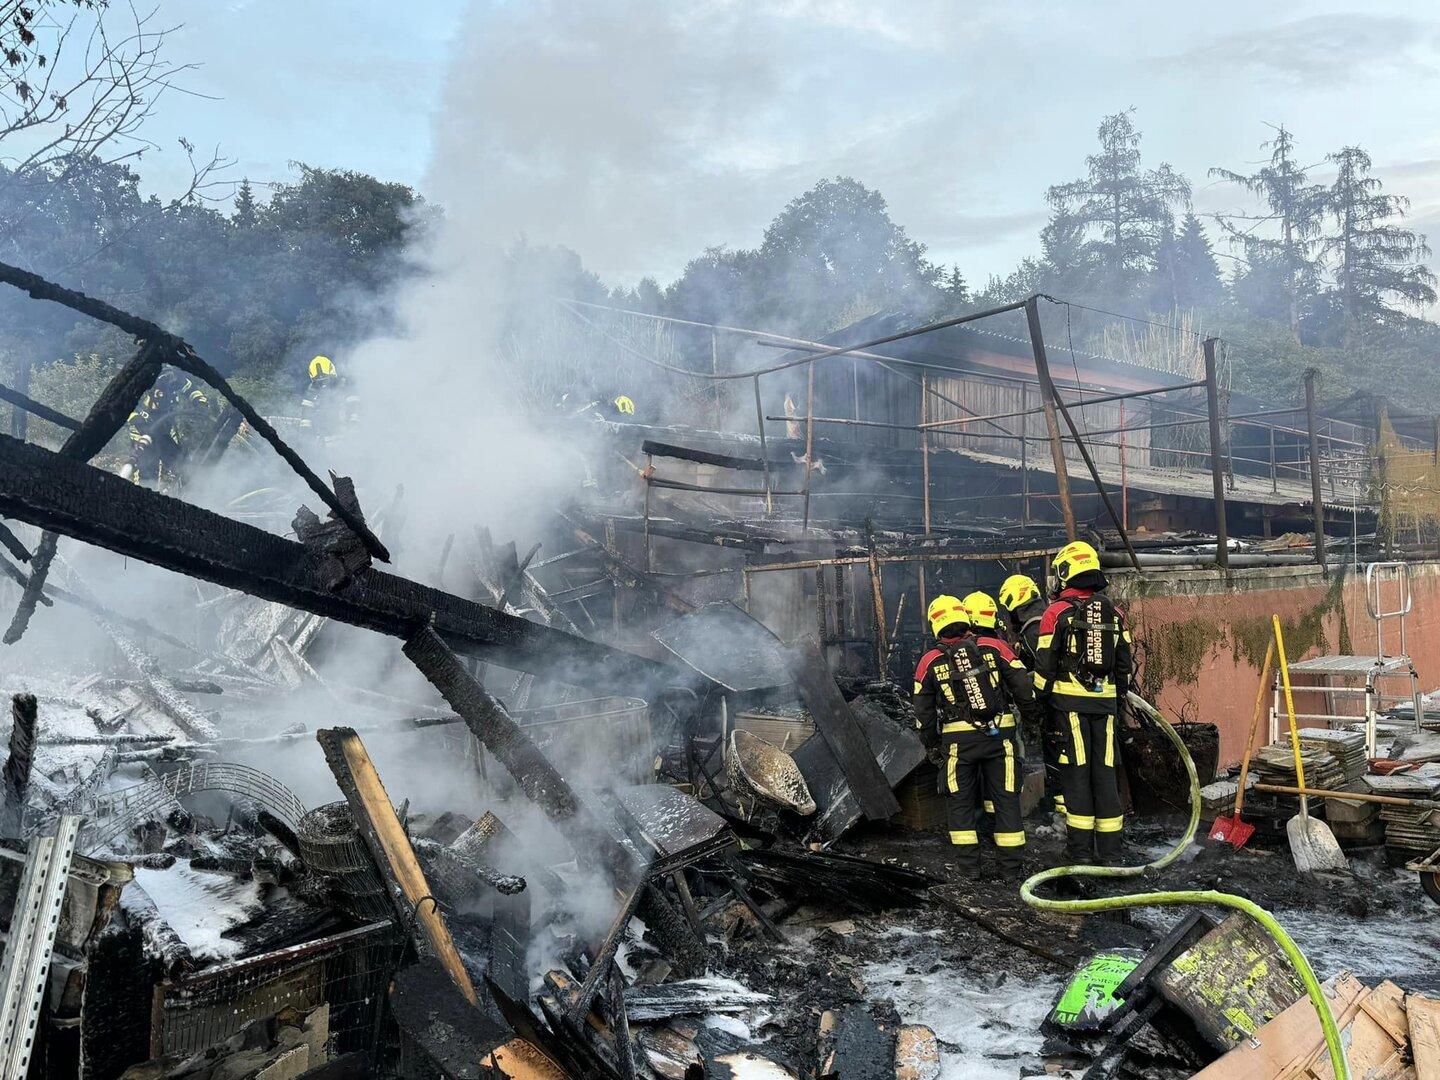 NÖ: Feuerwehren bekämpften Feuer in Schuppen und Taubenschlag